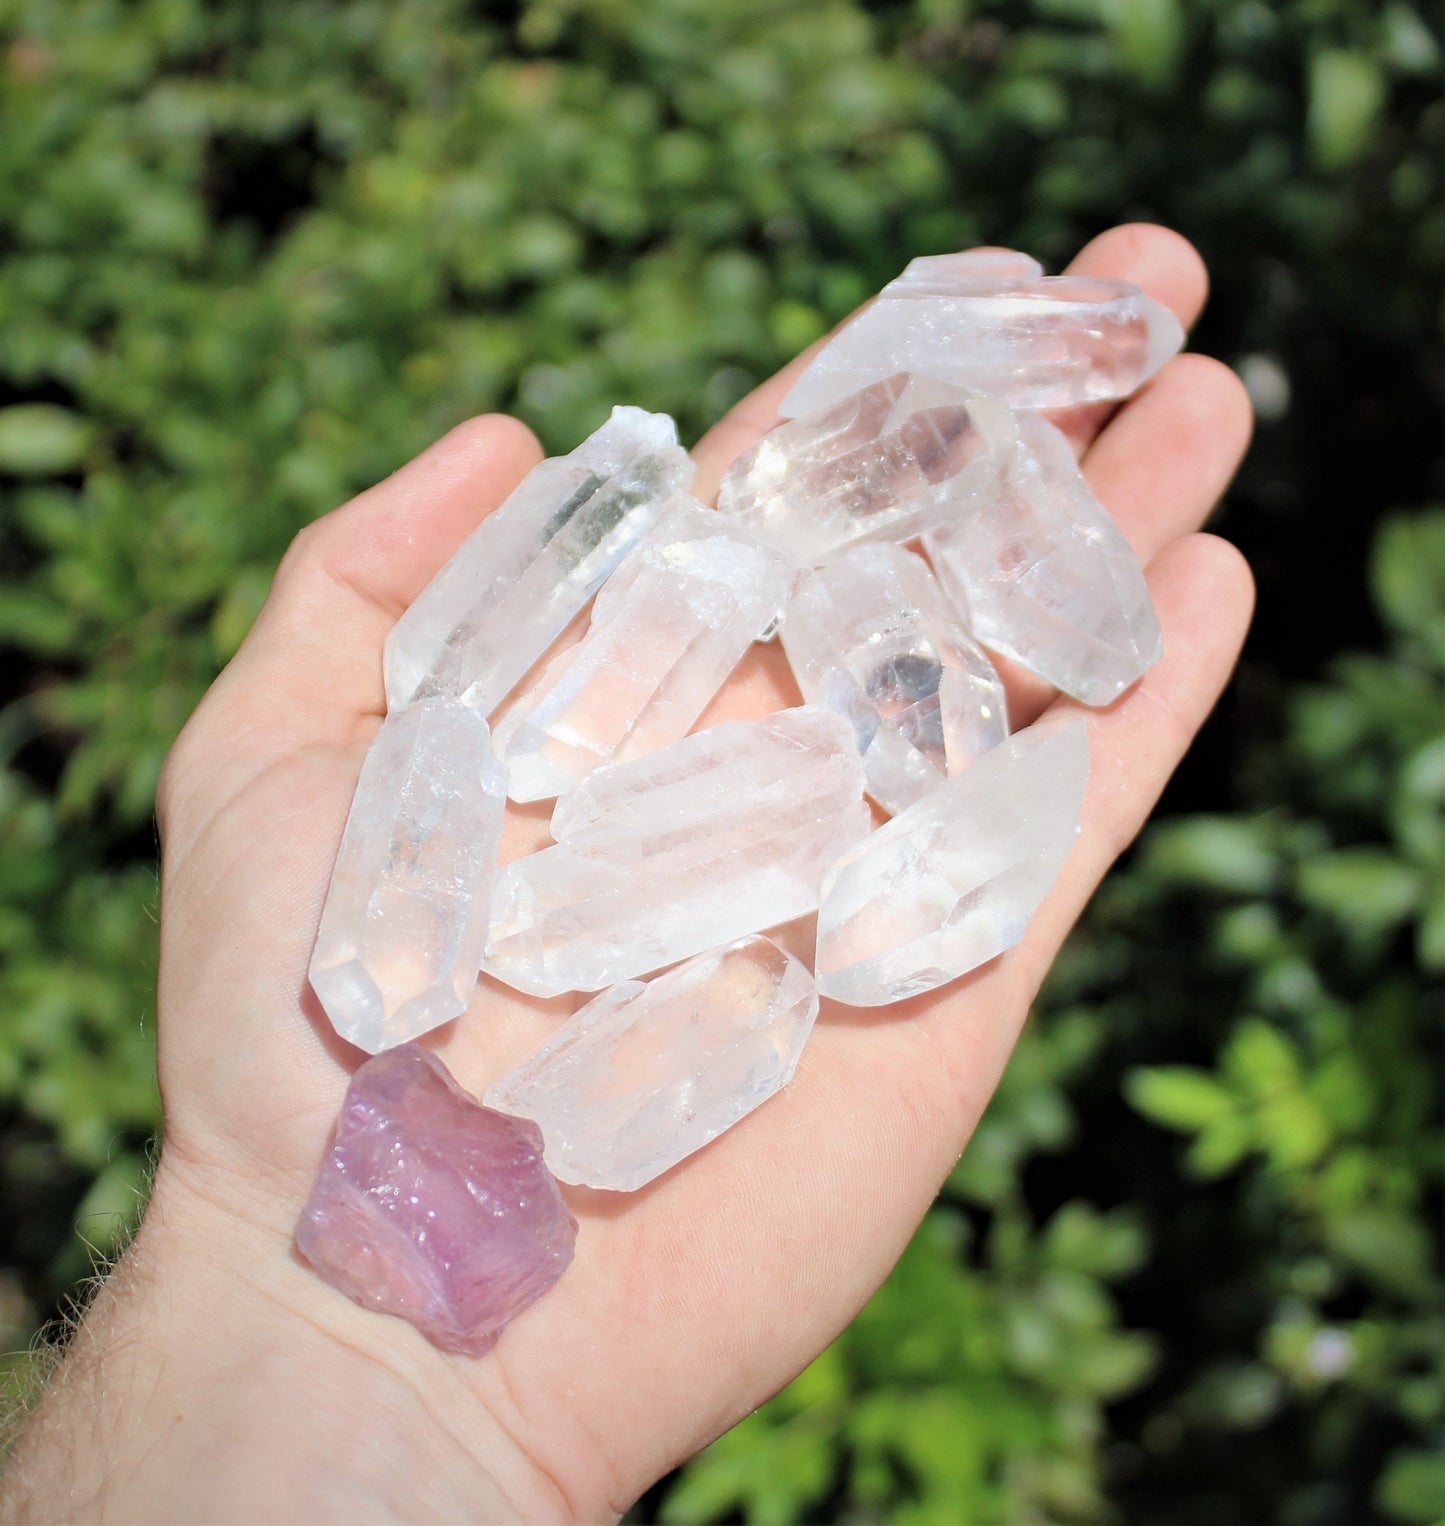 Raw Natural Amethyst Crystal